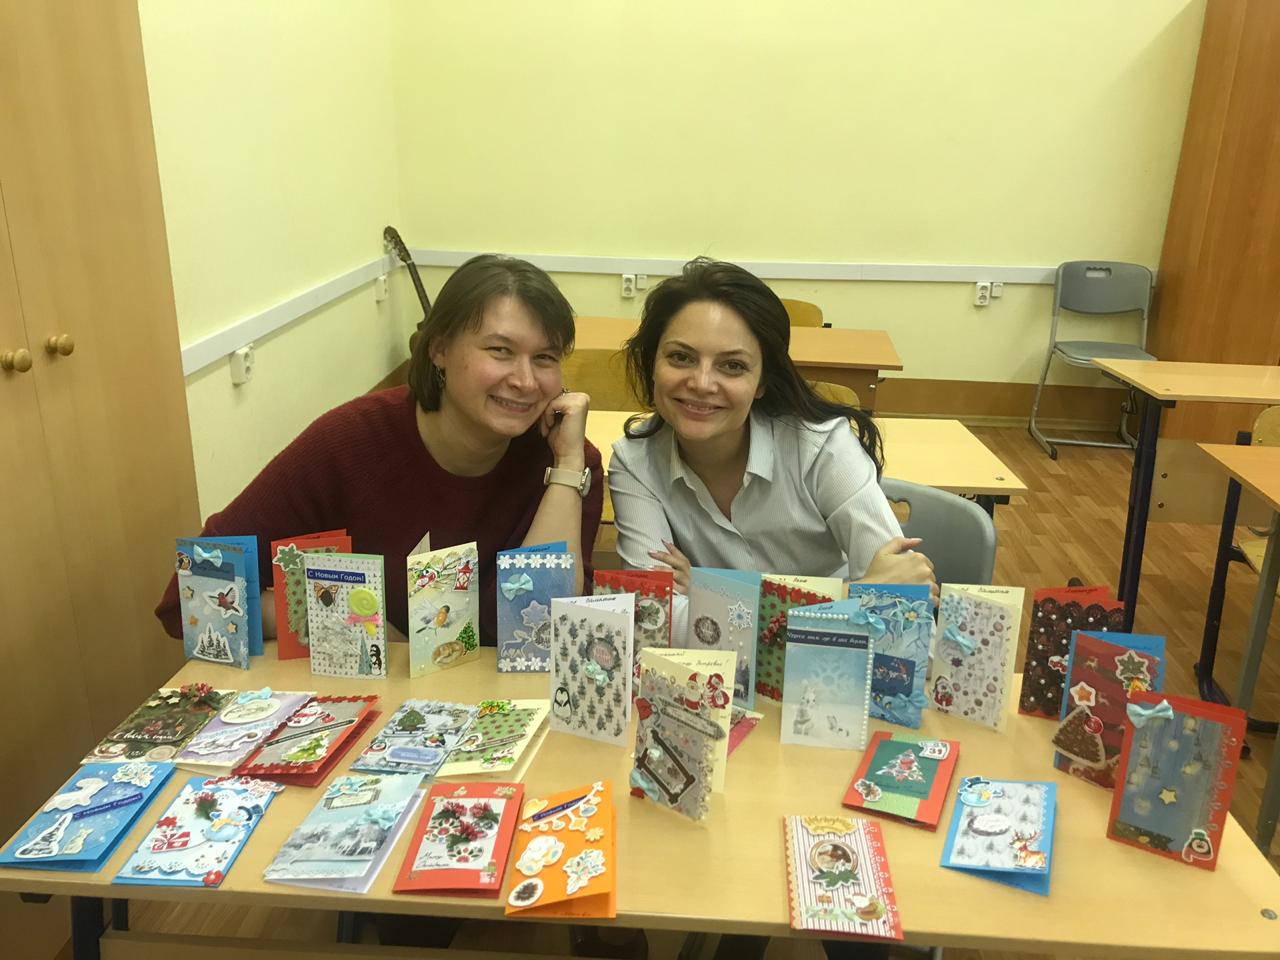 Волонтеры из школы №1310 подготовили новогодние открытки для подопечных фонда "Старость в радость".